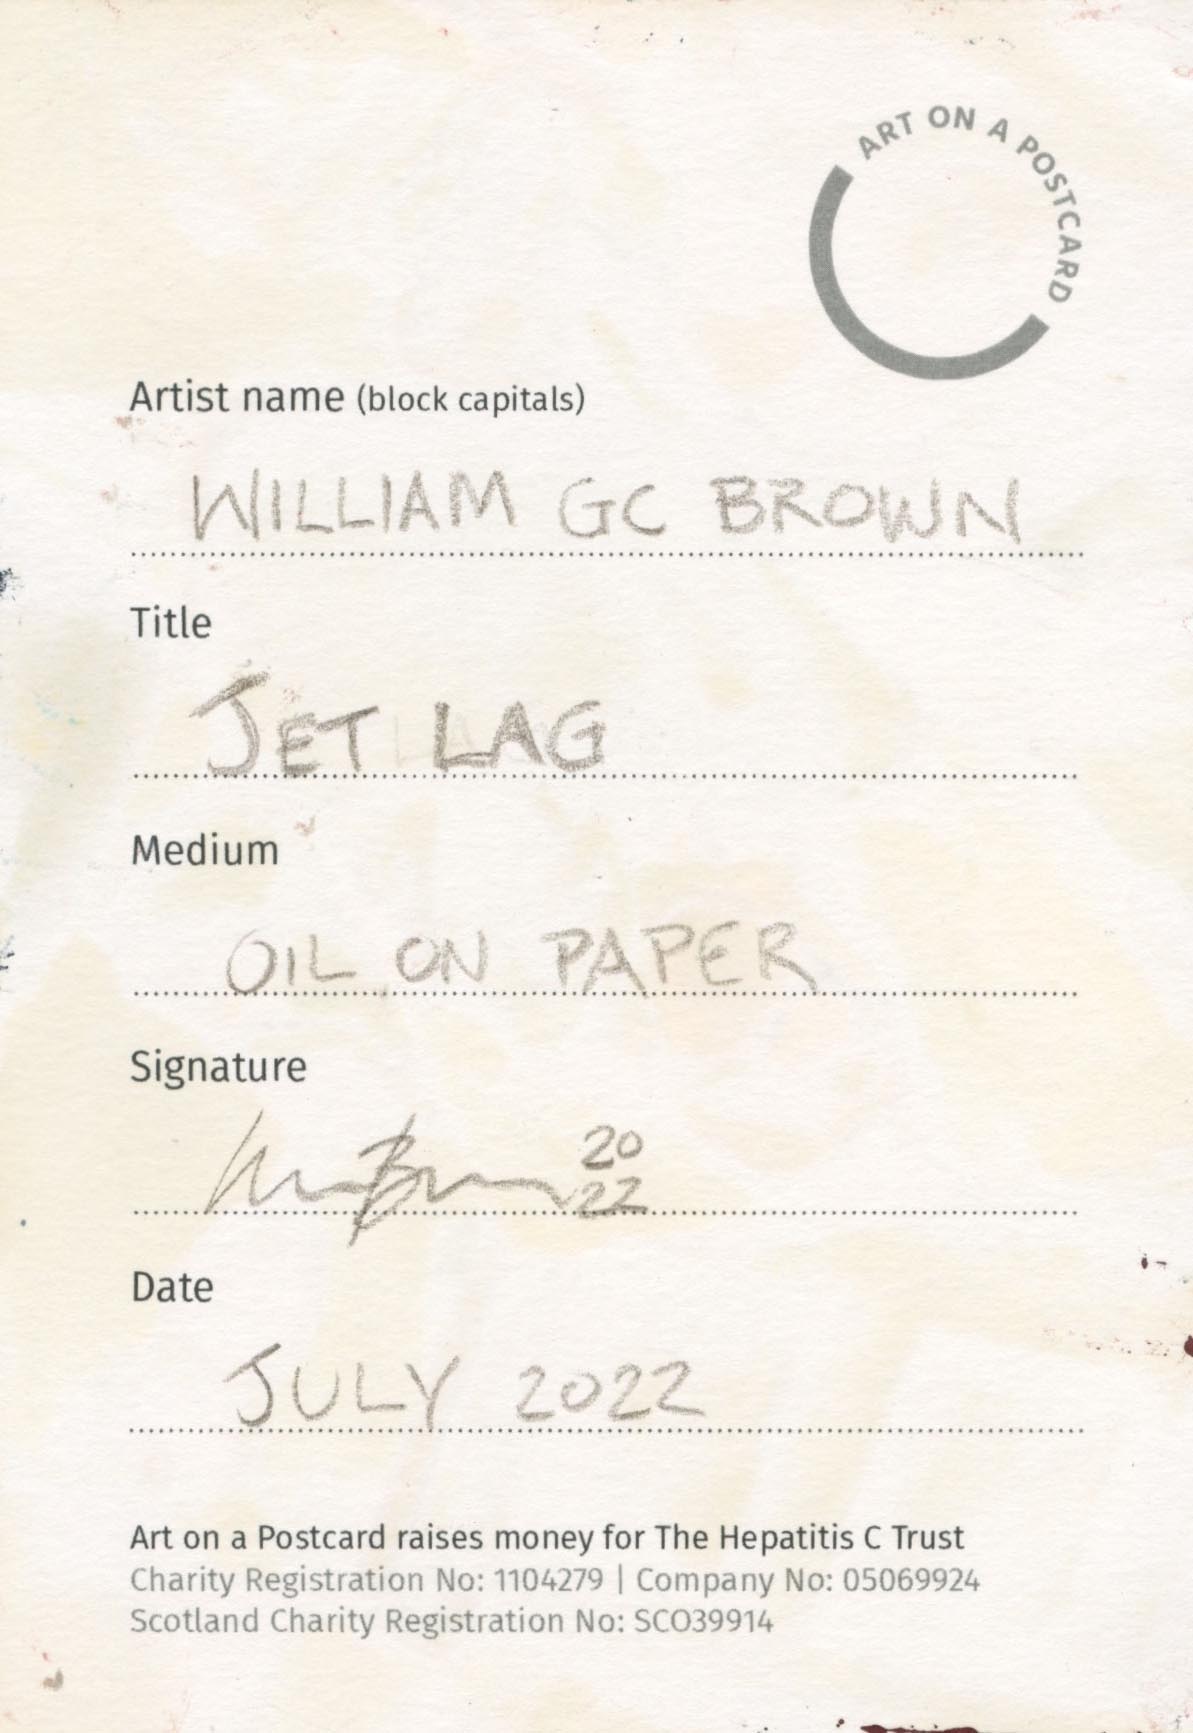 3. William GC Brown - Jet Lag - BACK